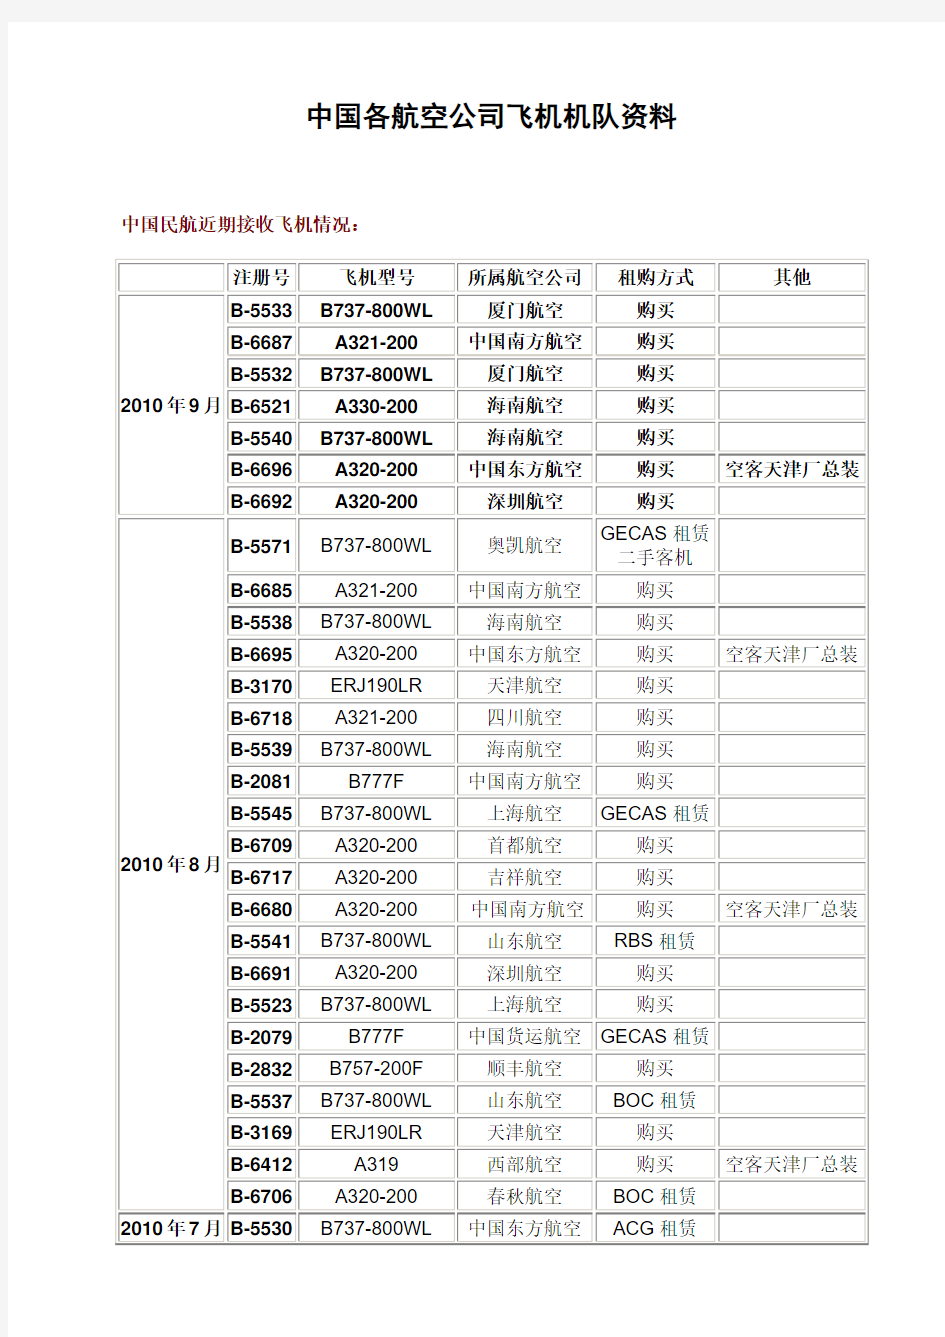 中国各航空公司飞机机队资料